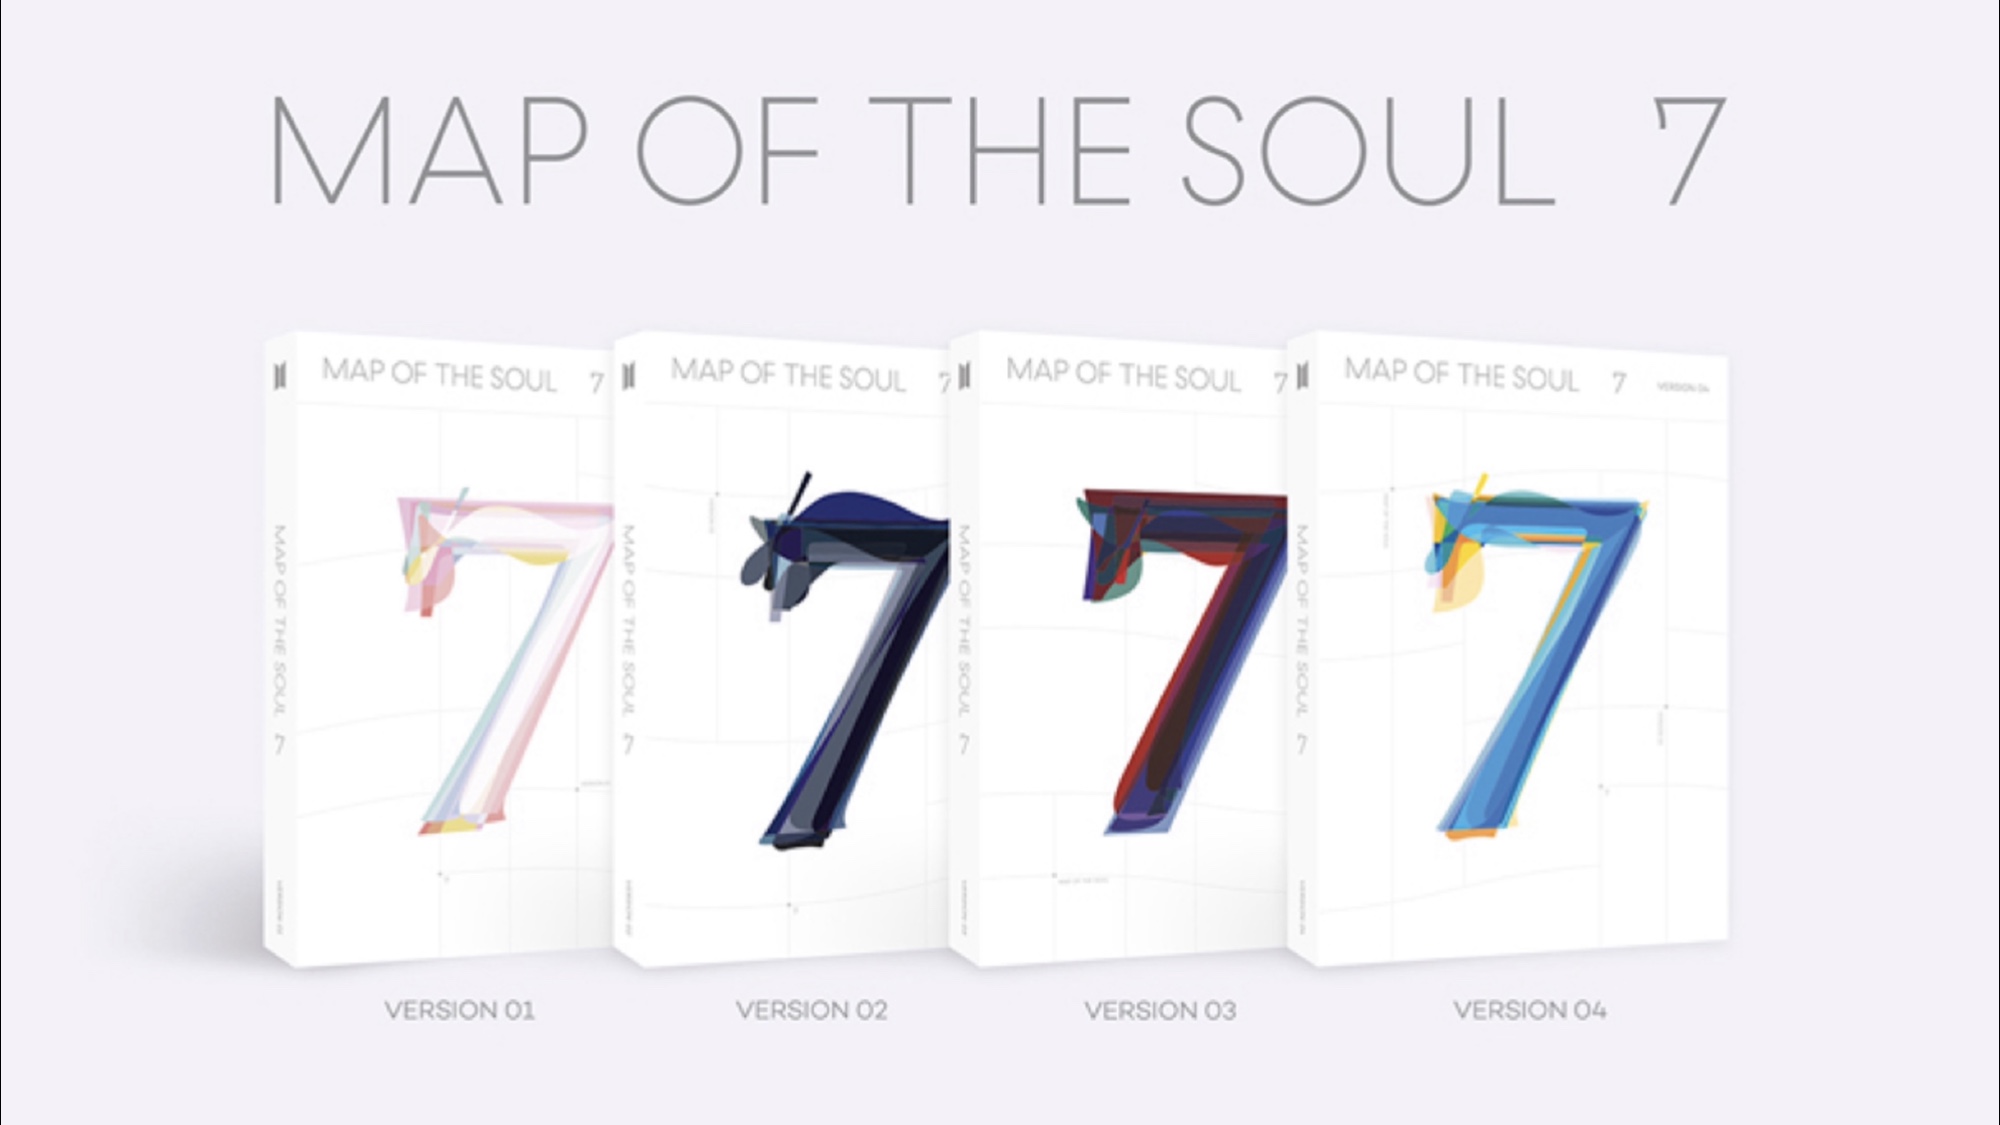 Bts Map Of The Soul 7 予約 購入方法 バージョン 特典 収録曲